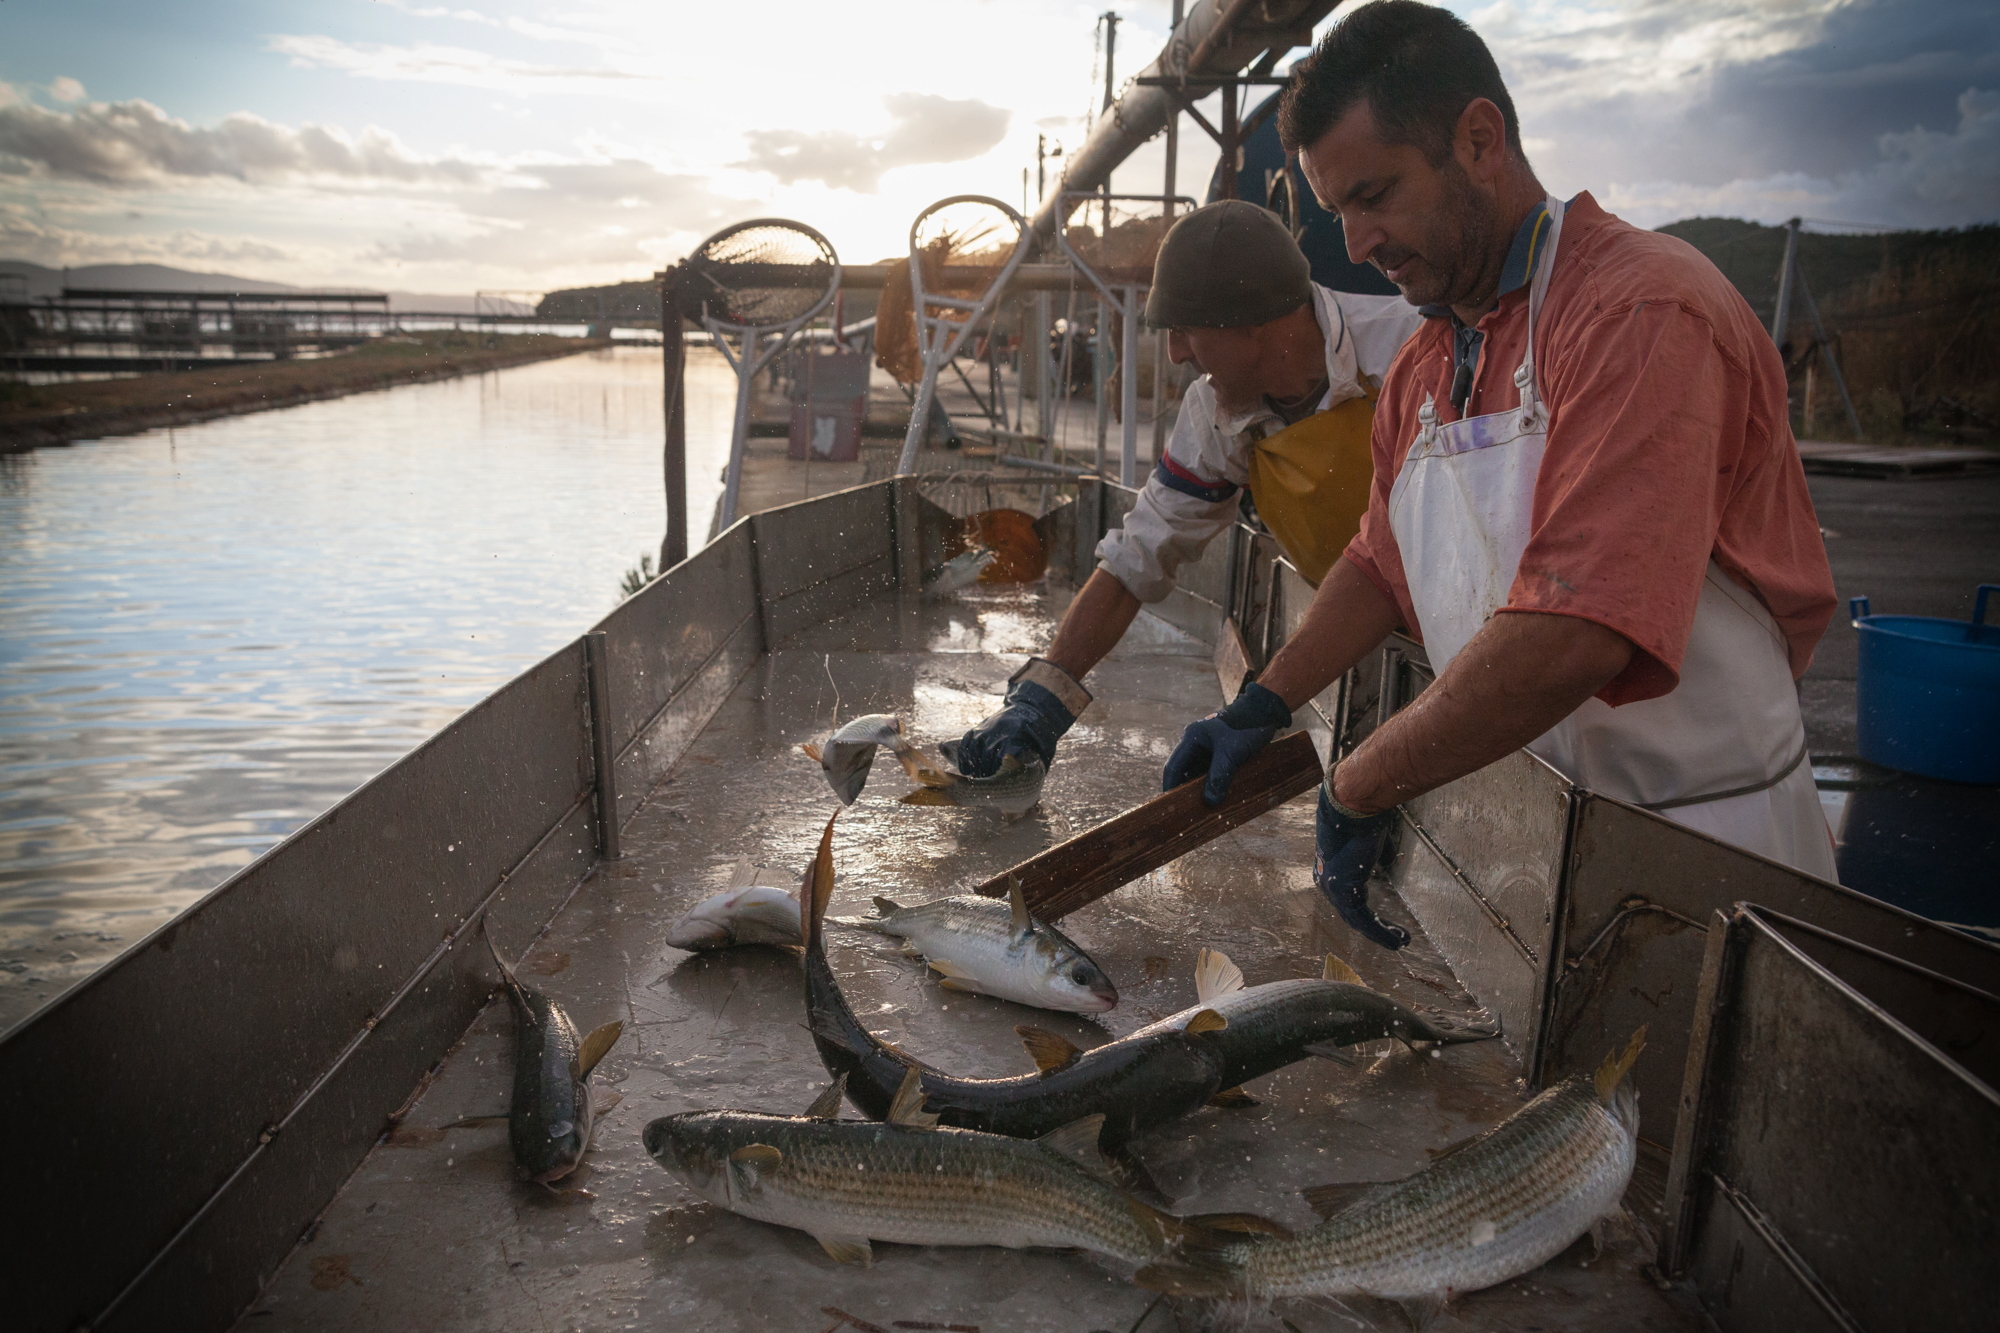  Selezione del pesce, Santa Liberata, Orbetello (Grosseto), 2015. Dopo la cattura, il pesce viene selezionato per genere e dimensione e i pesci sotto taglia , non ancora adatti alla commercializzazione, vengono liberati in laguna. I pescatori vorrebb